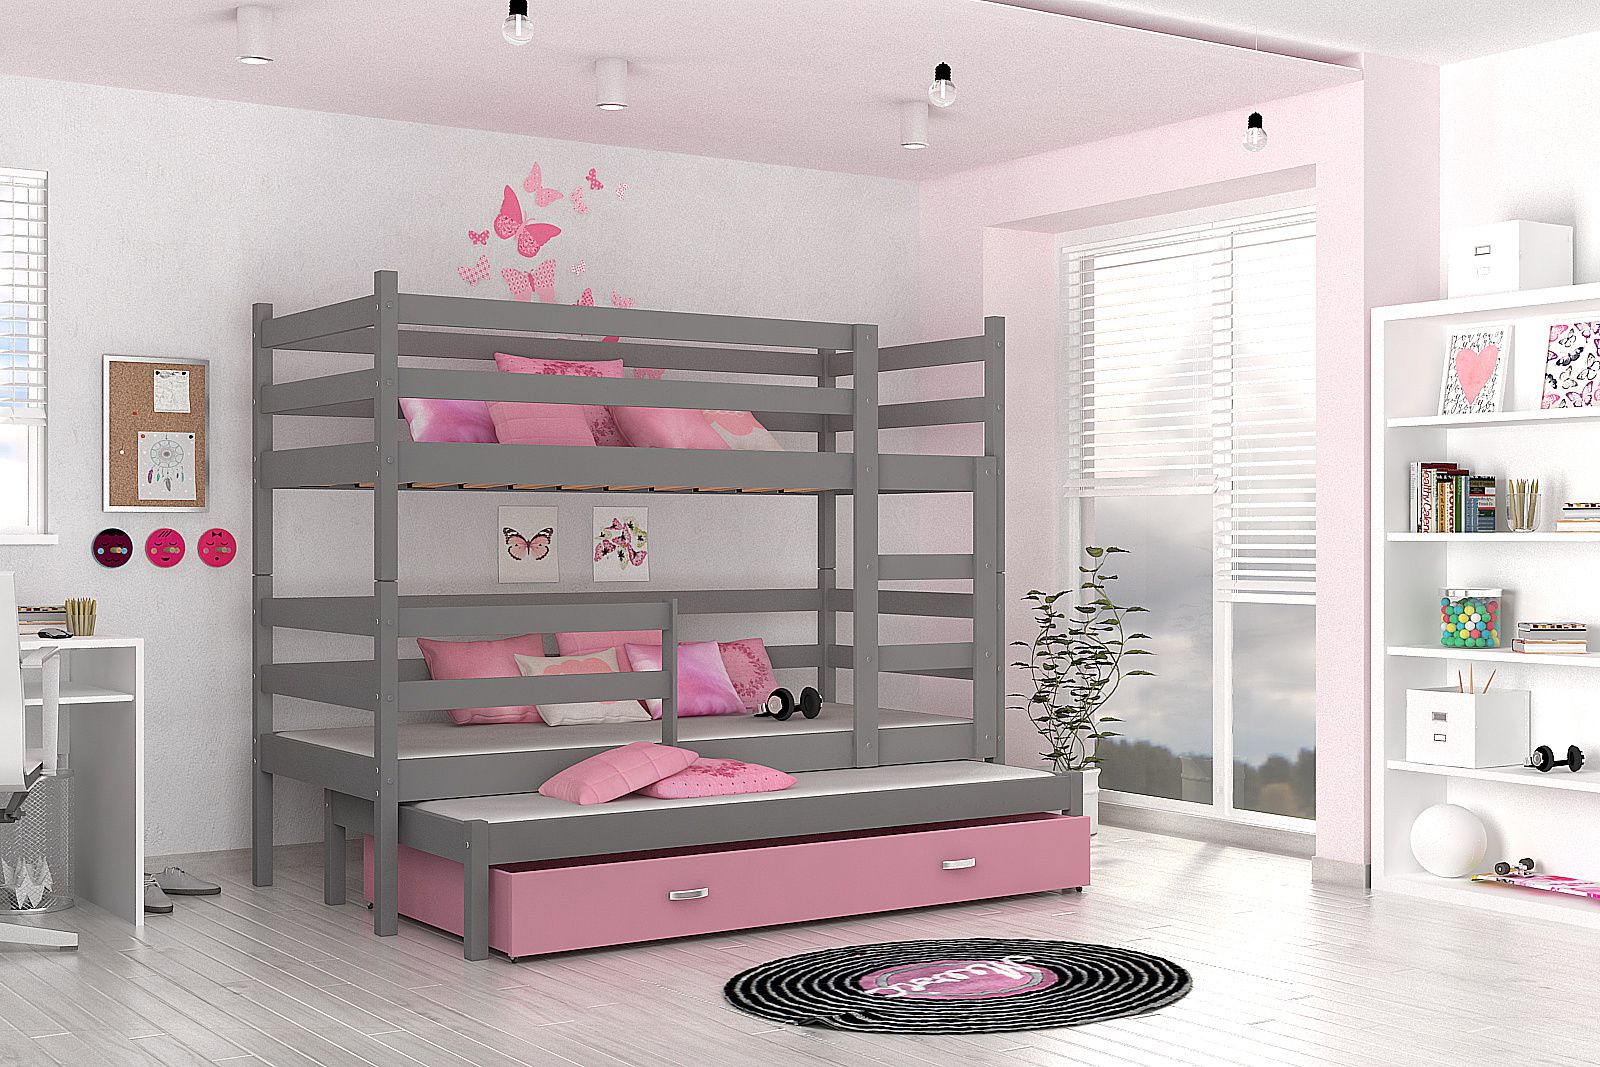 Dětská patrová postel RACEK B 2 COLOR + rošt + matrace ZDARMA, 190x80, šedý/růžový - Expedo s.r.o.